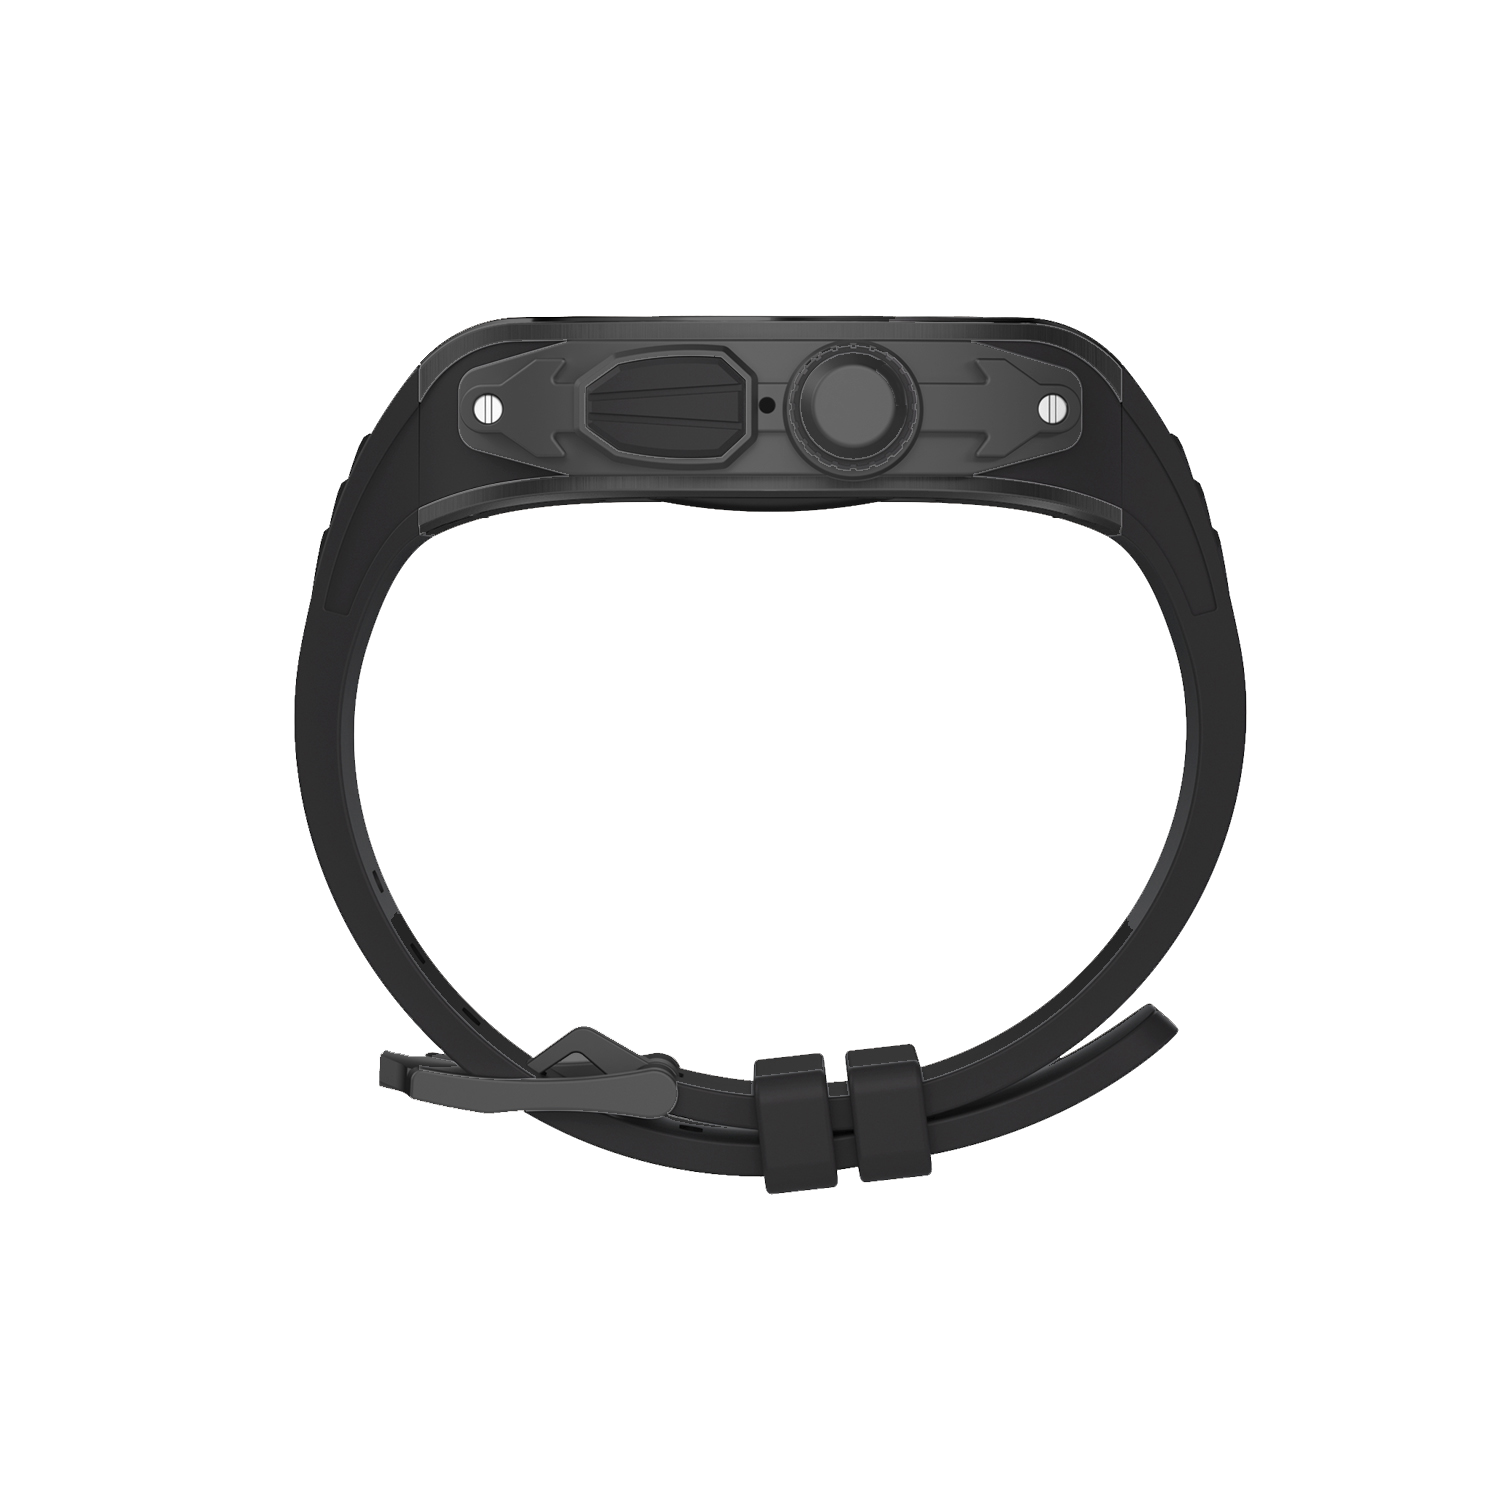 Apple Watch 錶殼摩納哥超黑 - 橡膠